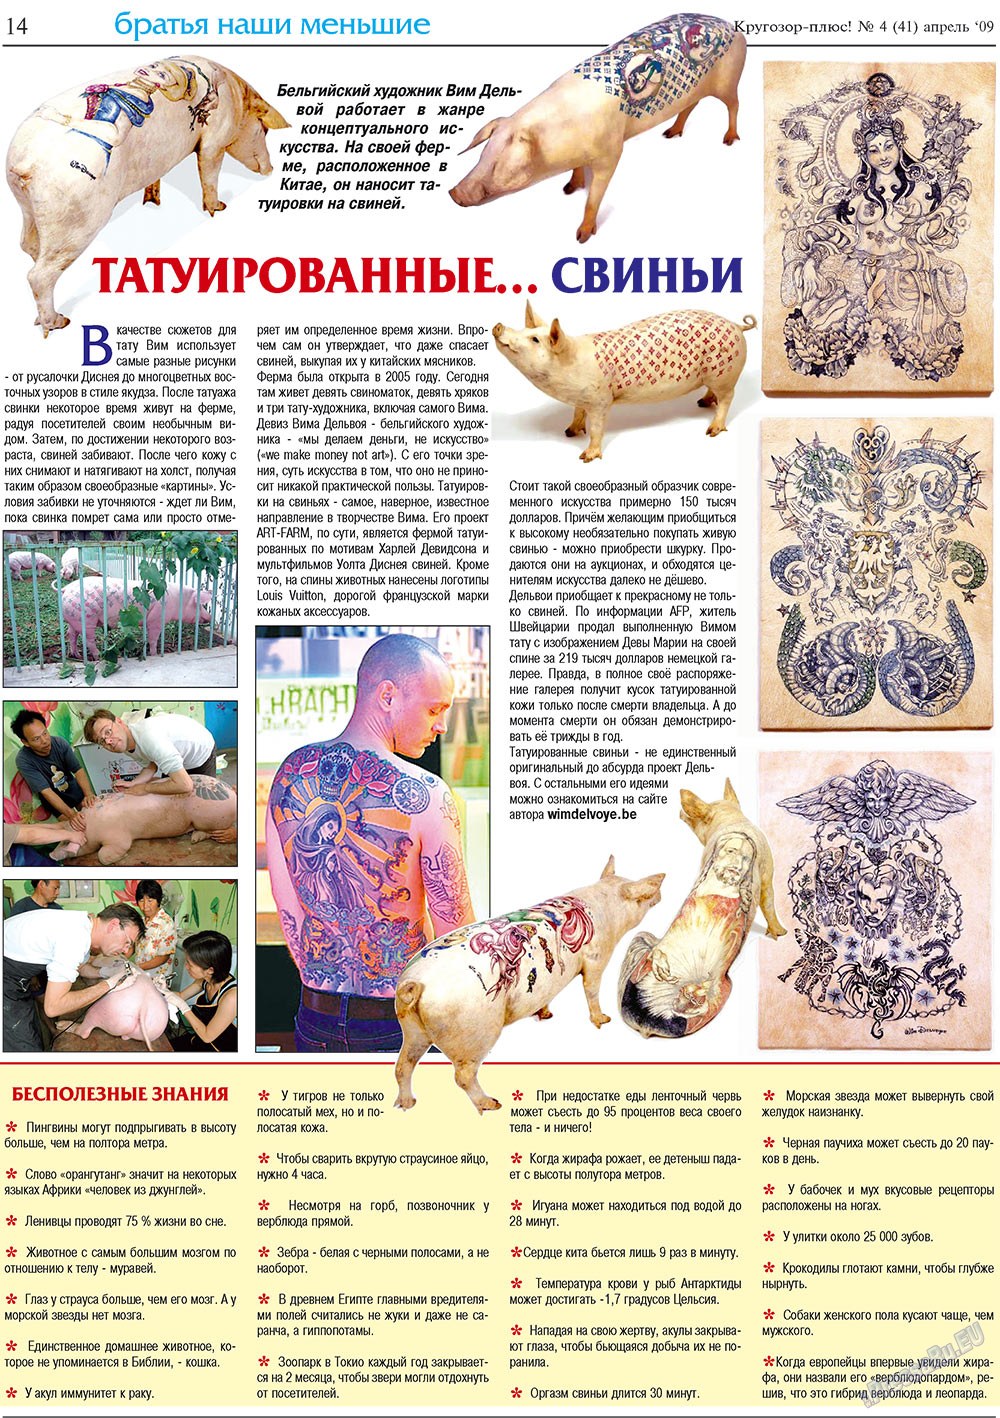 Кругозор плюс!, газета. 2009 №4 стр.14